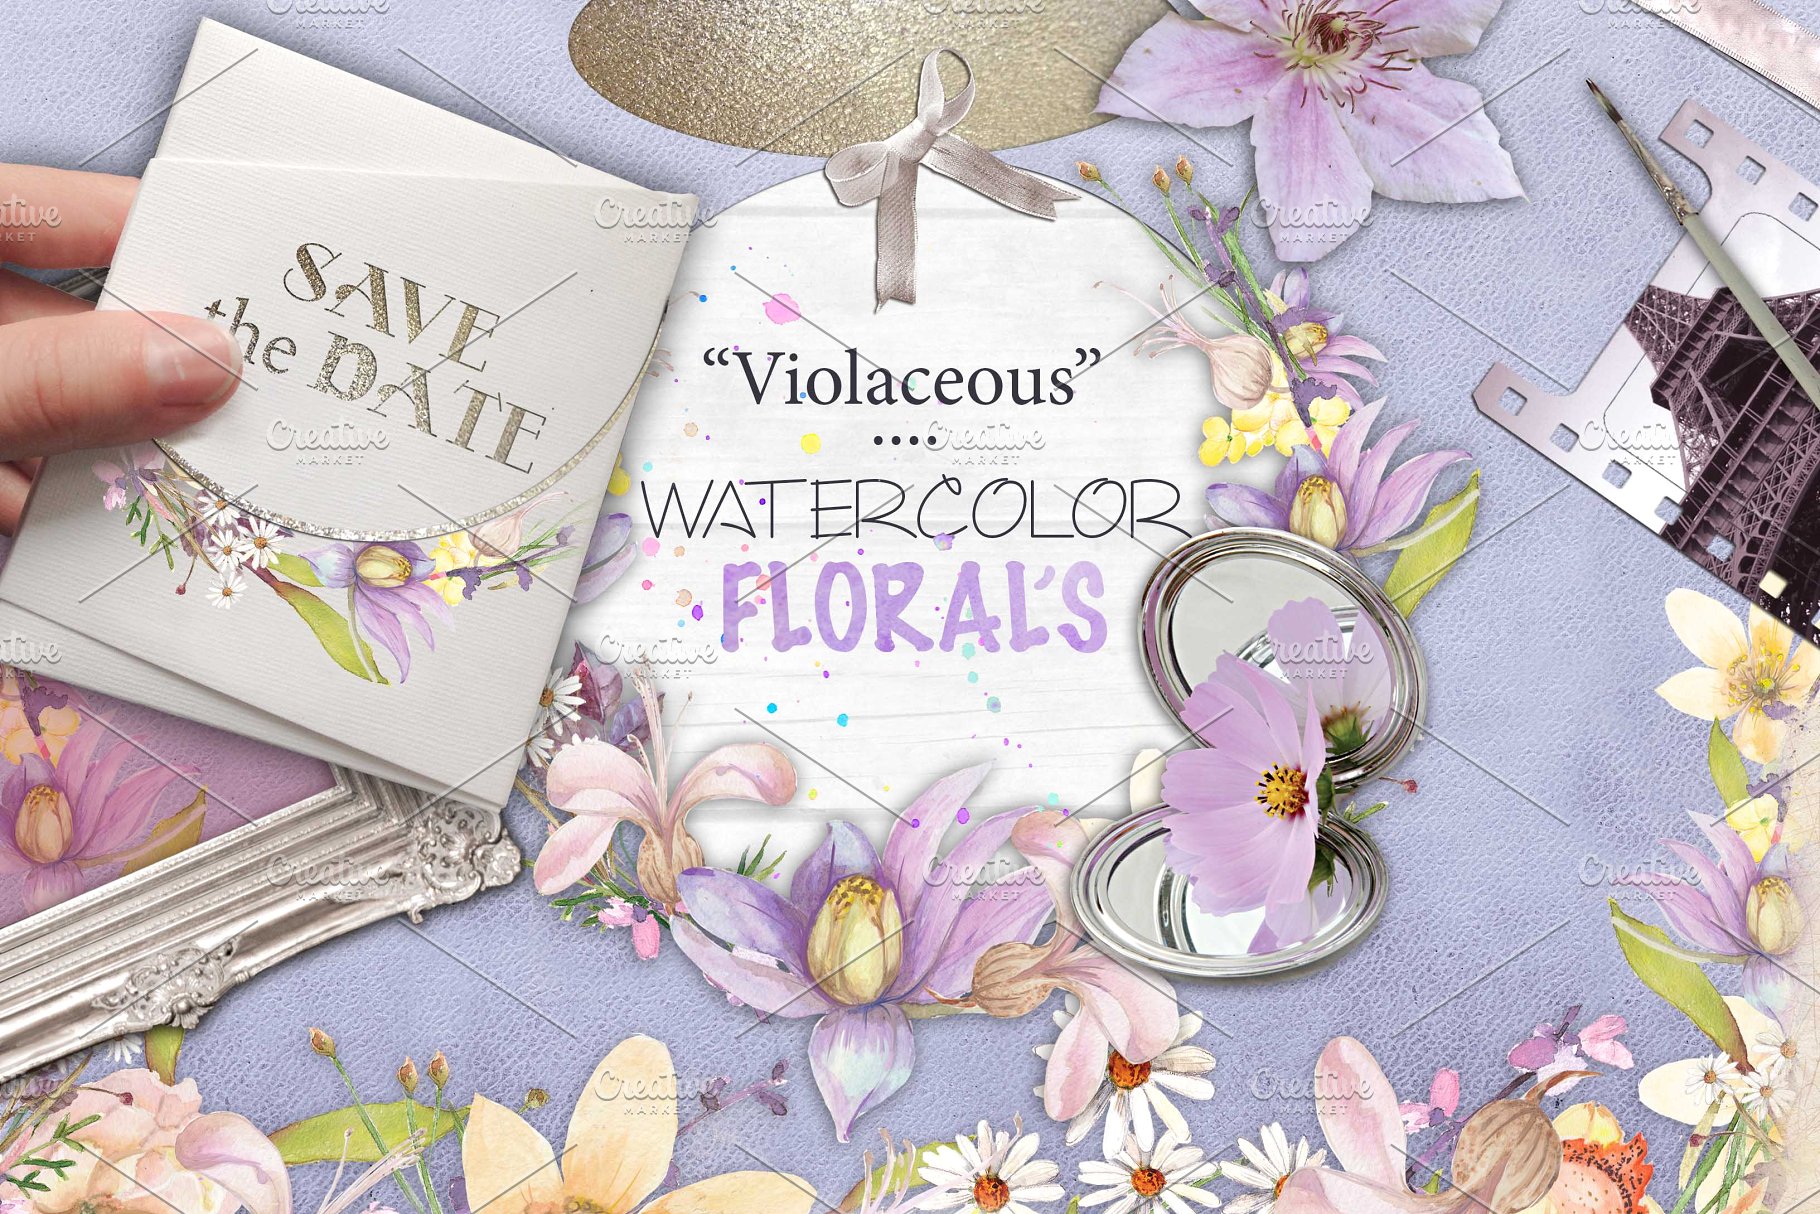 紫罗兰色水彩花卉插画素材 Violaceous watercolors插图(6)